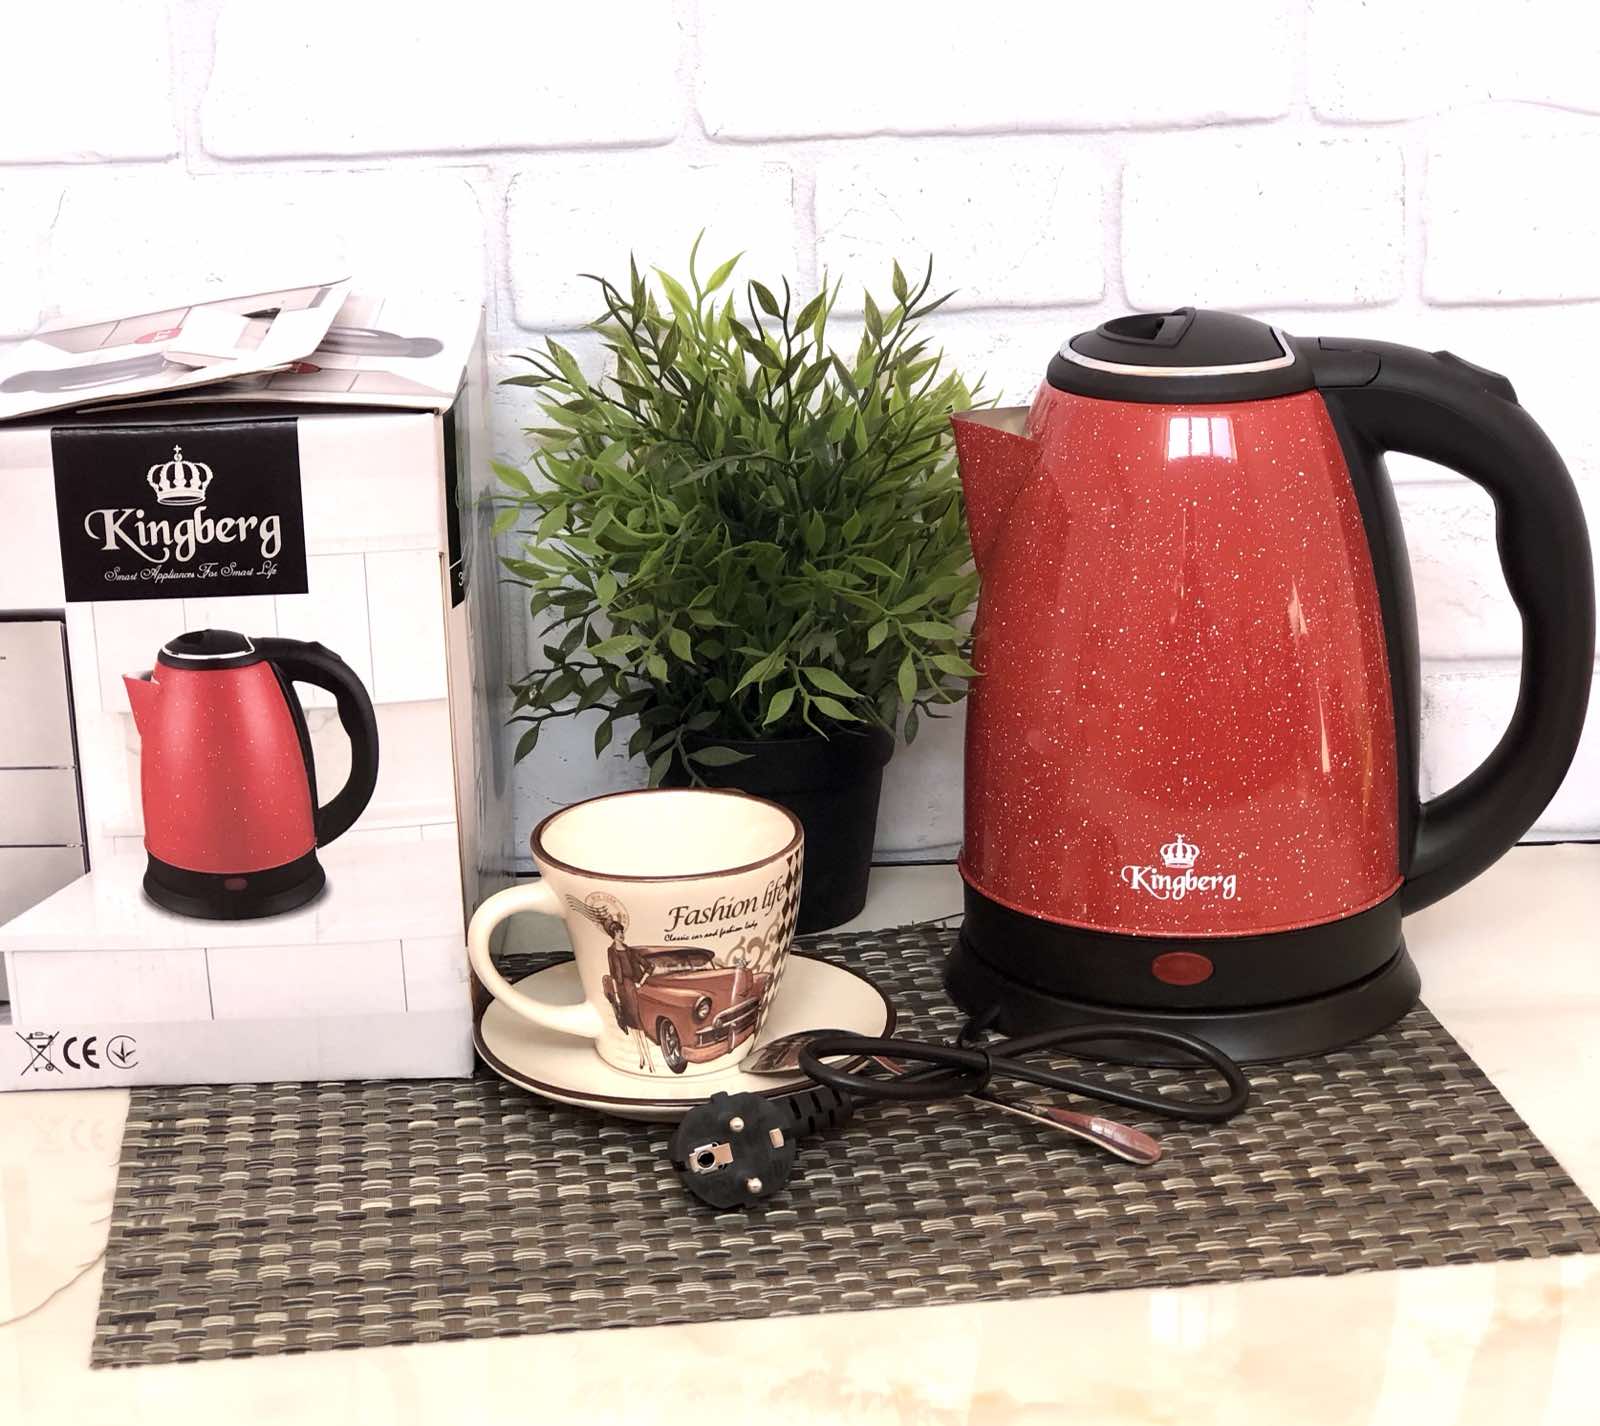 Электрический чайник Красный 2 л Kingberg - 2040 ✅ базовая цена $7.59 ✔ Опт ✔ Скидки ✔ Заходите! - Интернет-магазин ✅ Фортуна-опт ✅